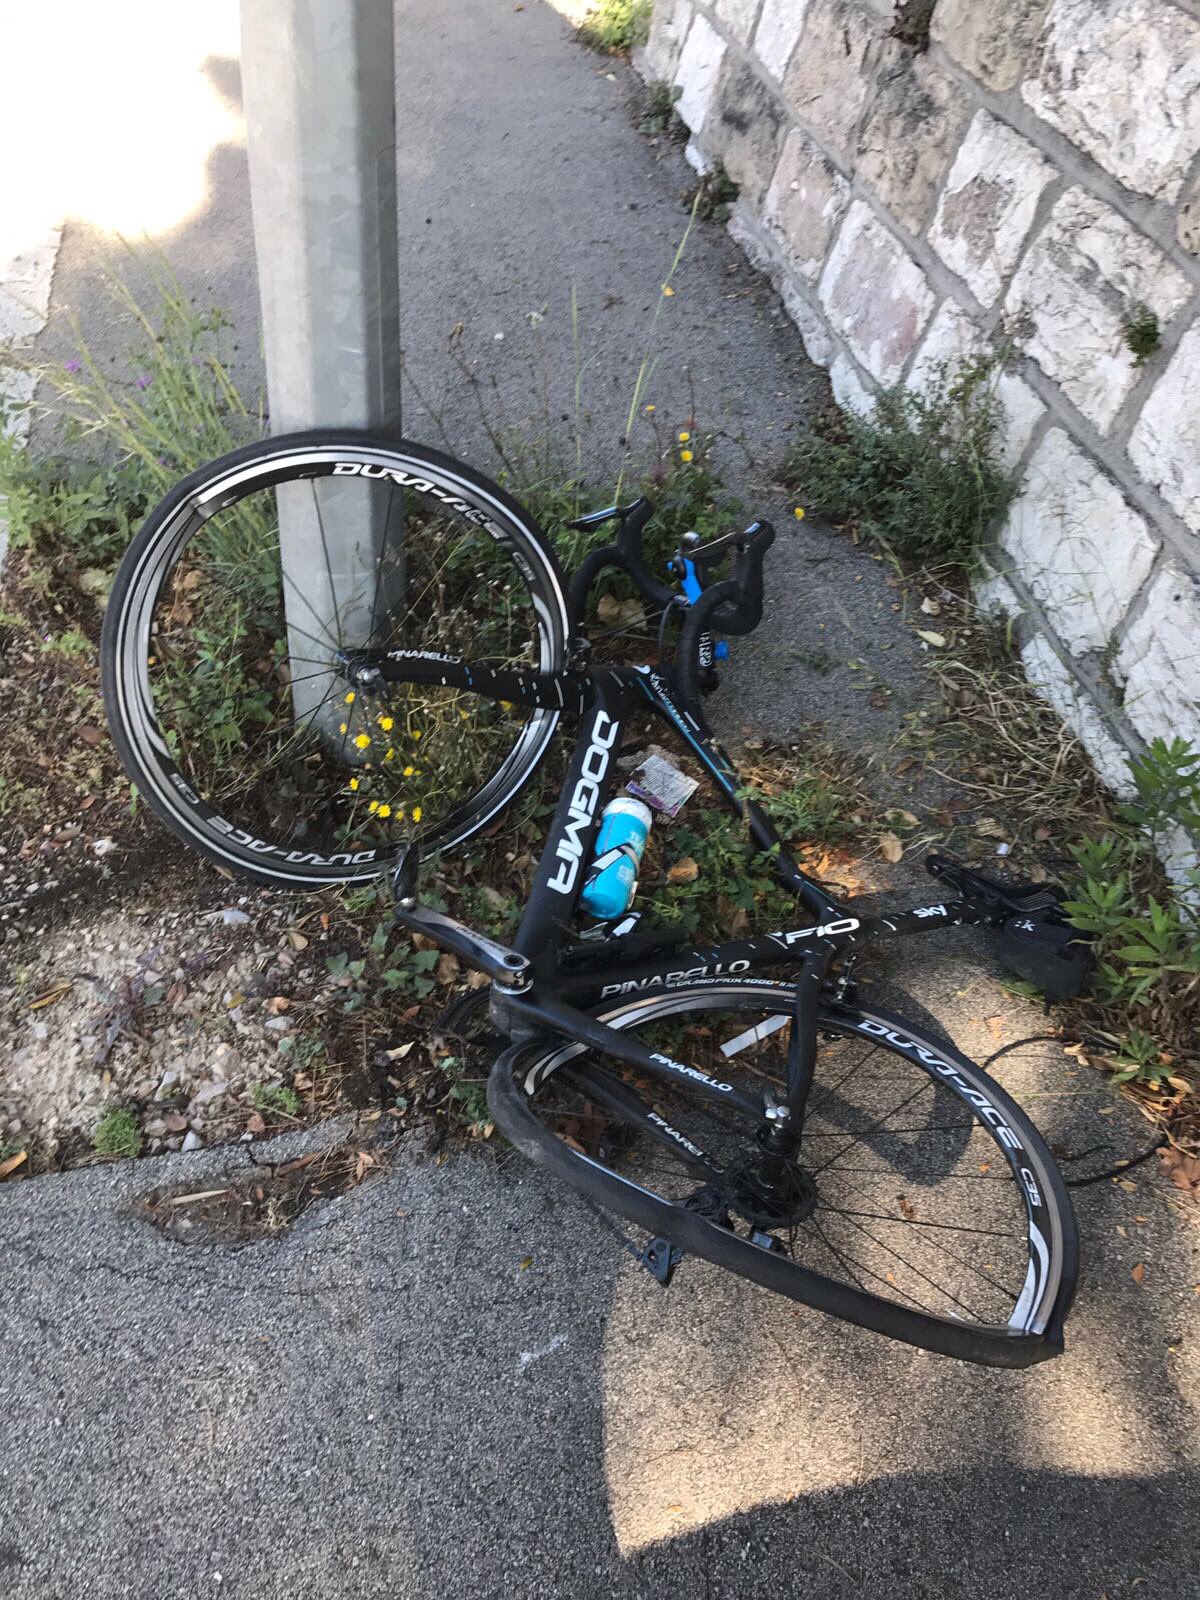 Le vélo de Froome après le choc.